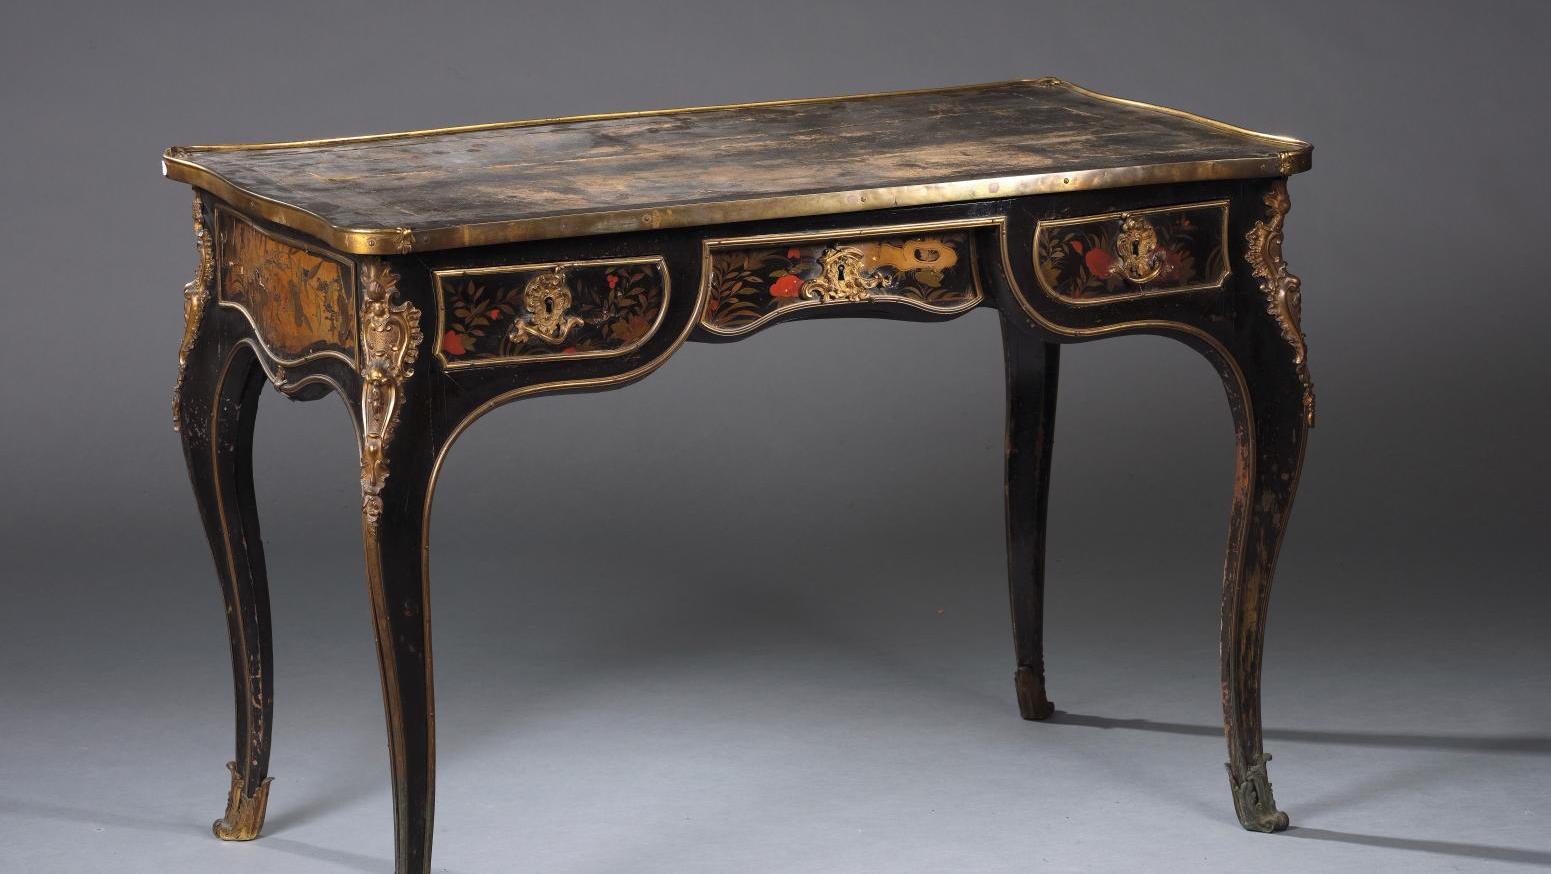 Époque Louis XV, bureau plat en bois noirci à décor de vernis européen polychrome... Du XVIIIe siècle à l’Empire